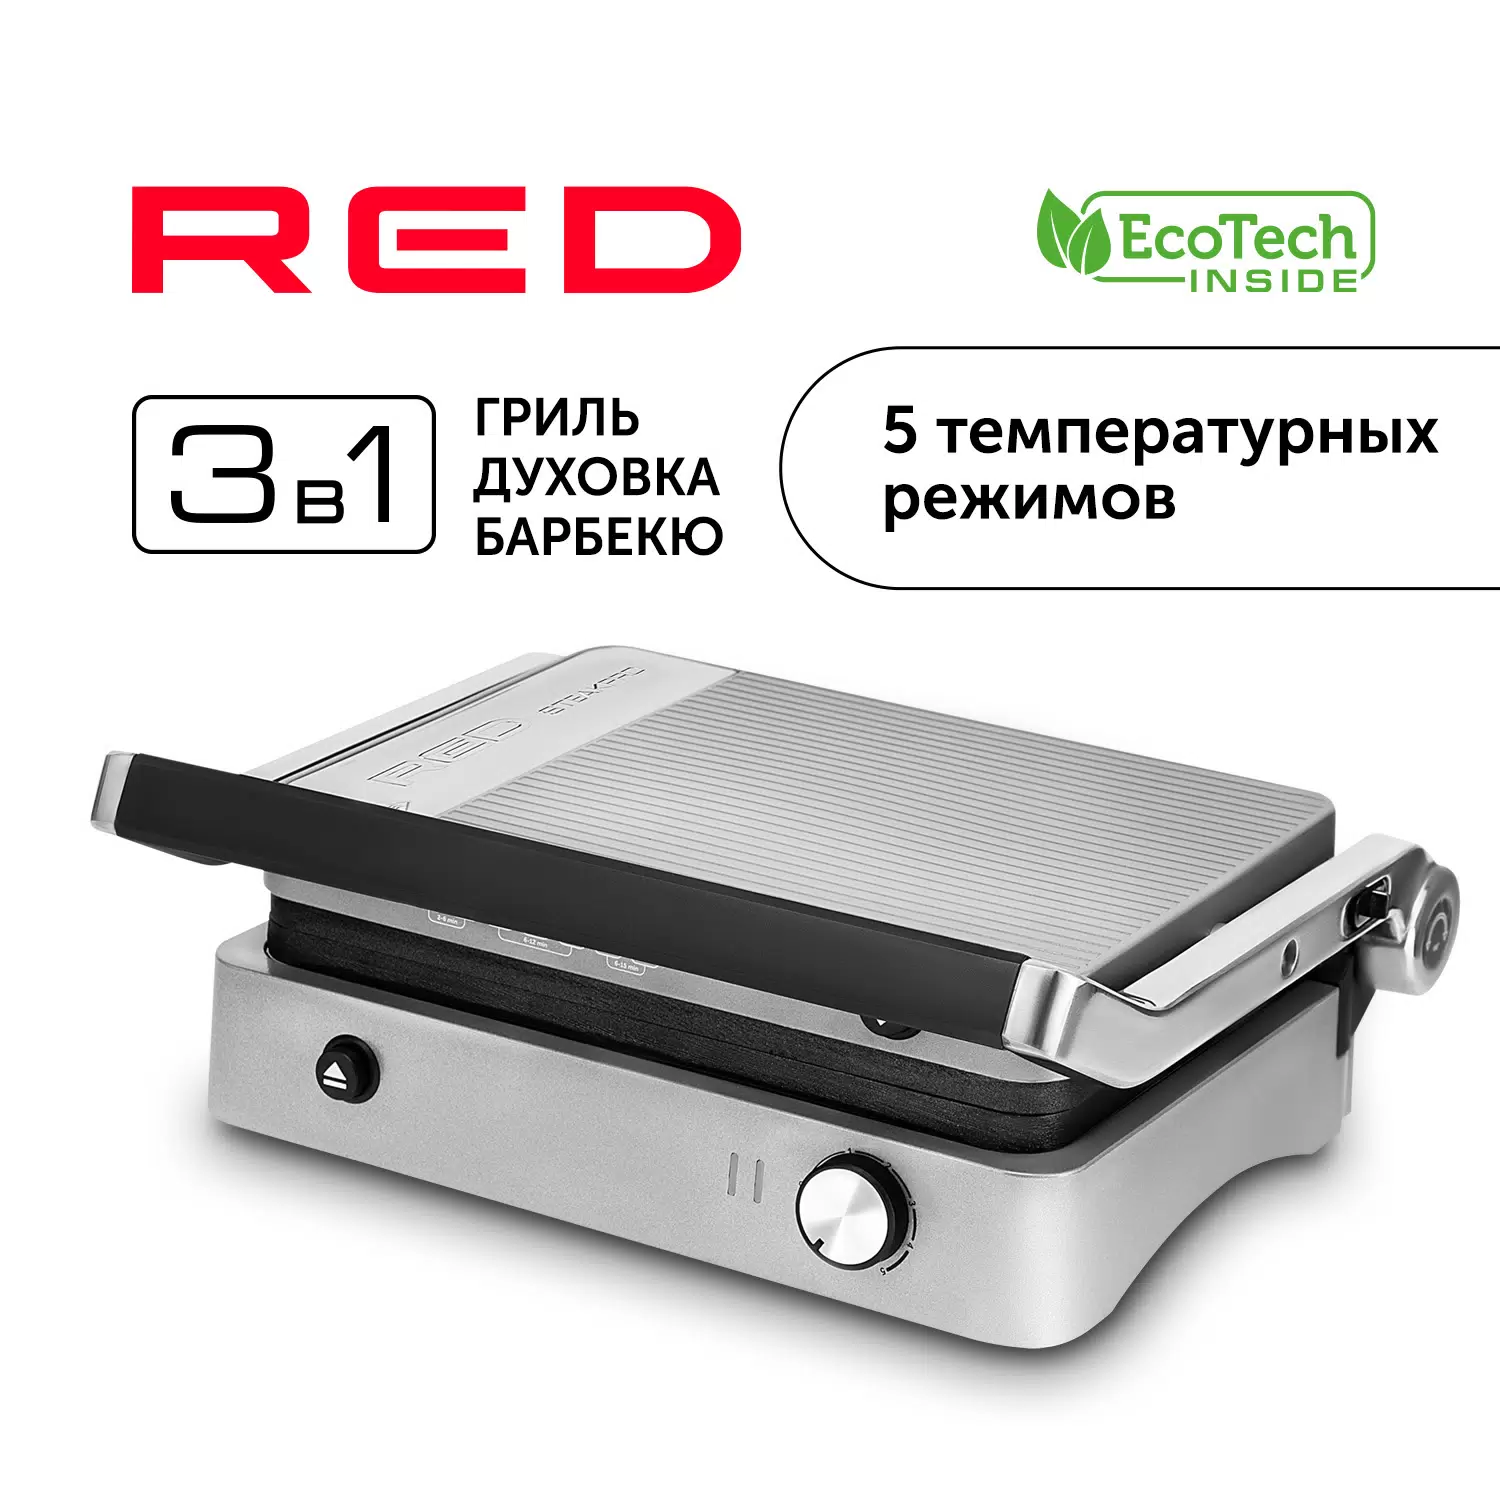 Гриль RED SOLUTION RGM-M814 серый - VLARNIKA в Донецке